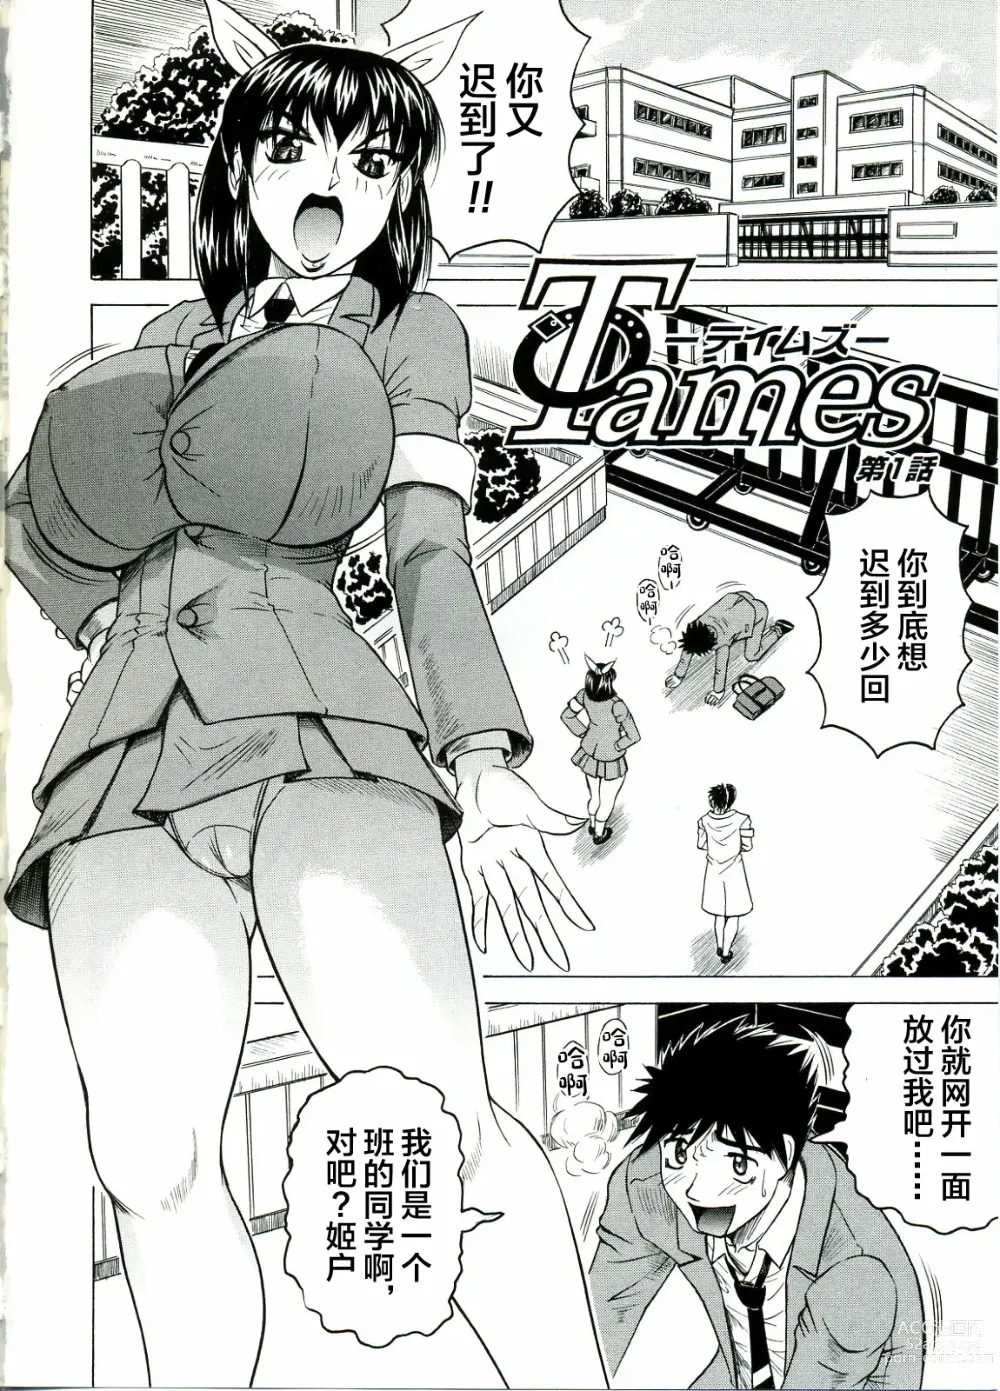 Page 6 of manga Tames